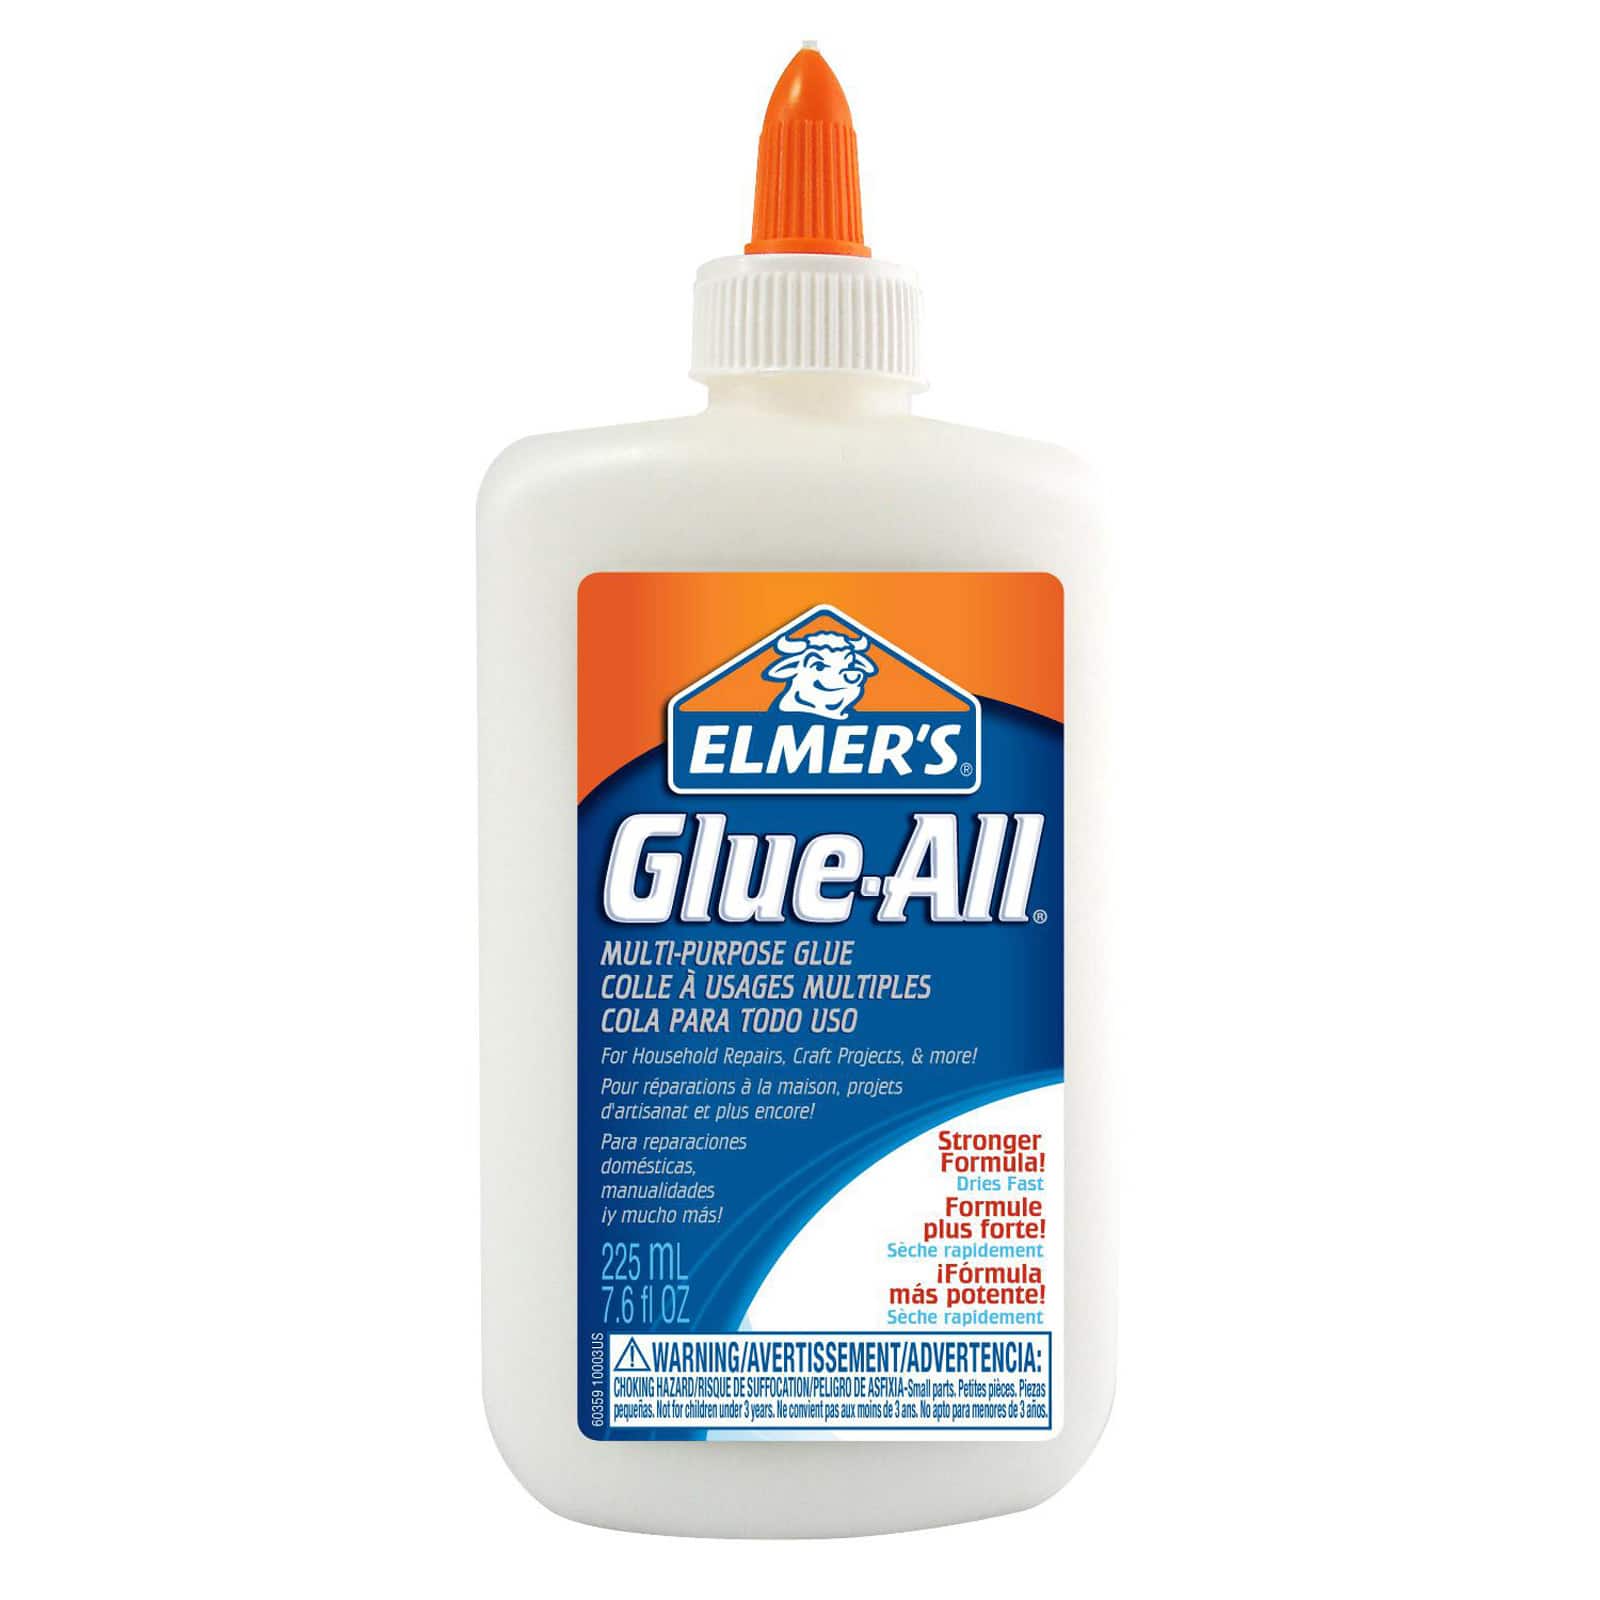 12 Packs: 4 ct. (48 total) Krazy Glue® All Purpose Super Glue